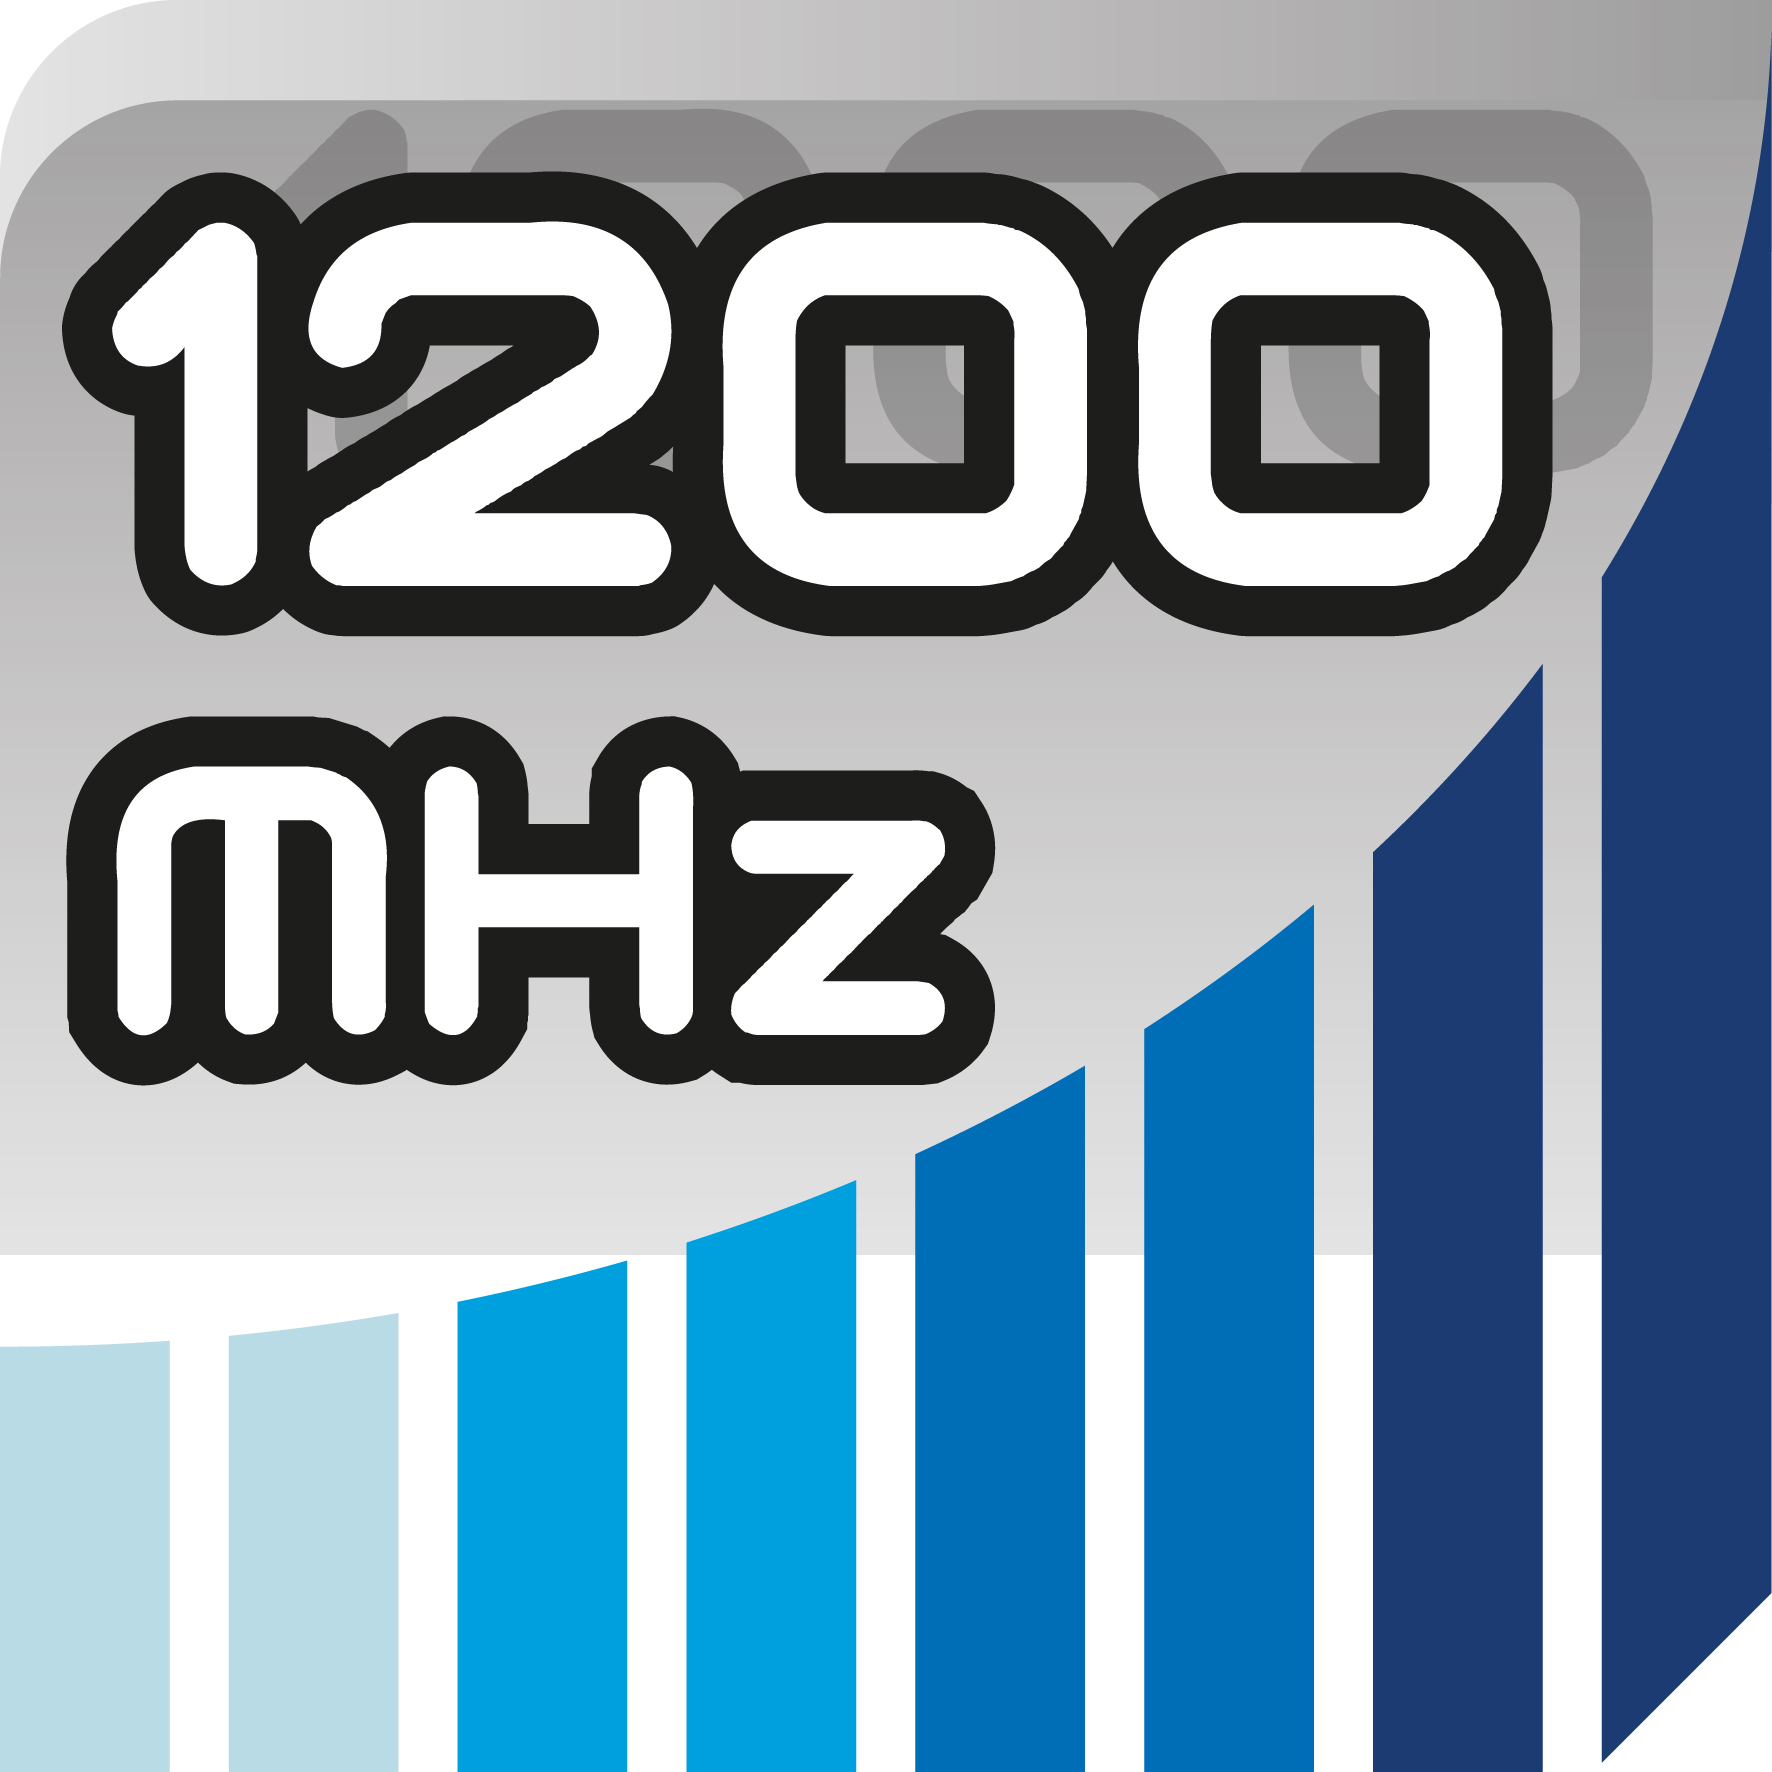 1200 MHz